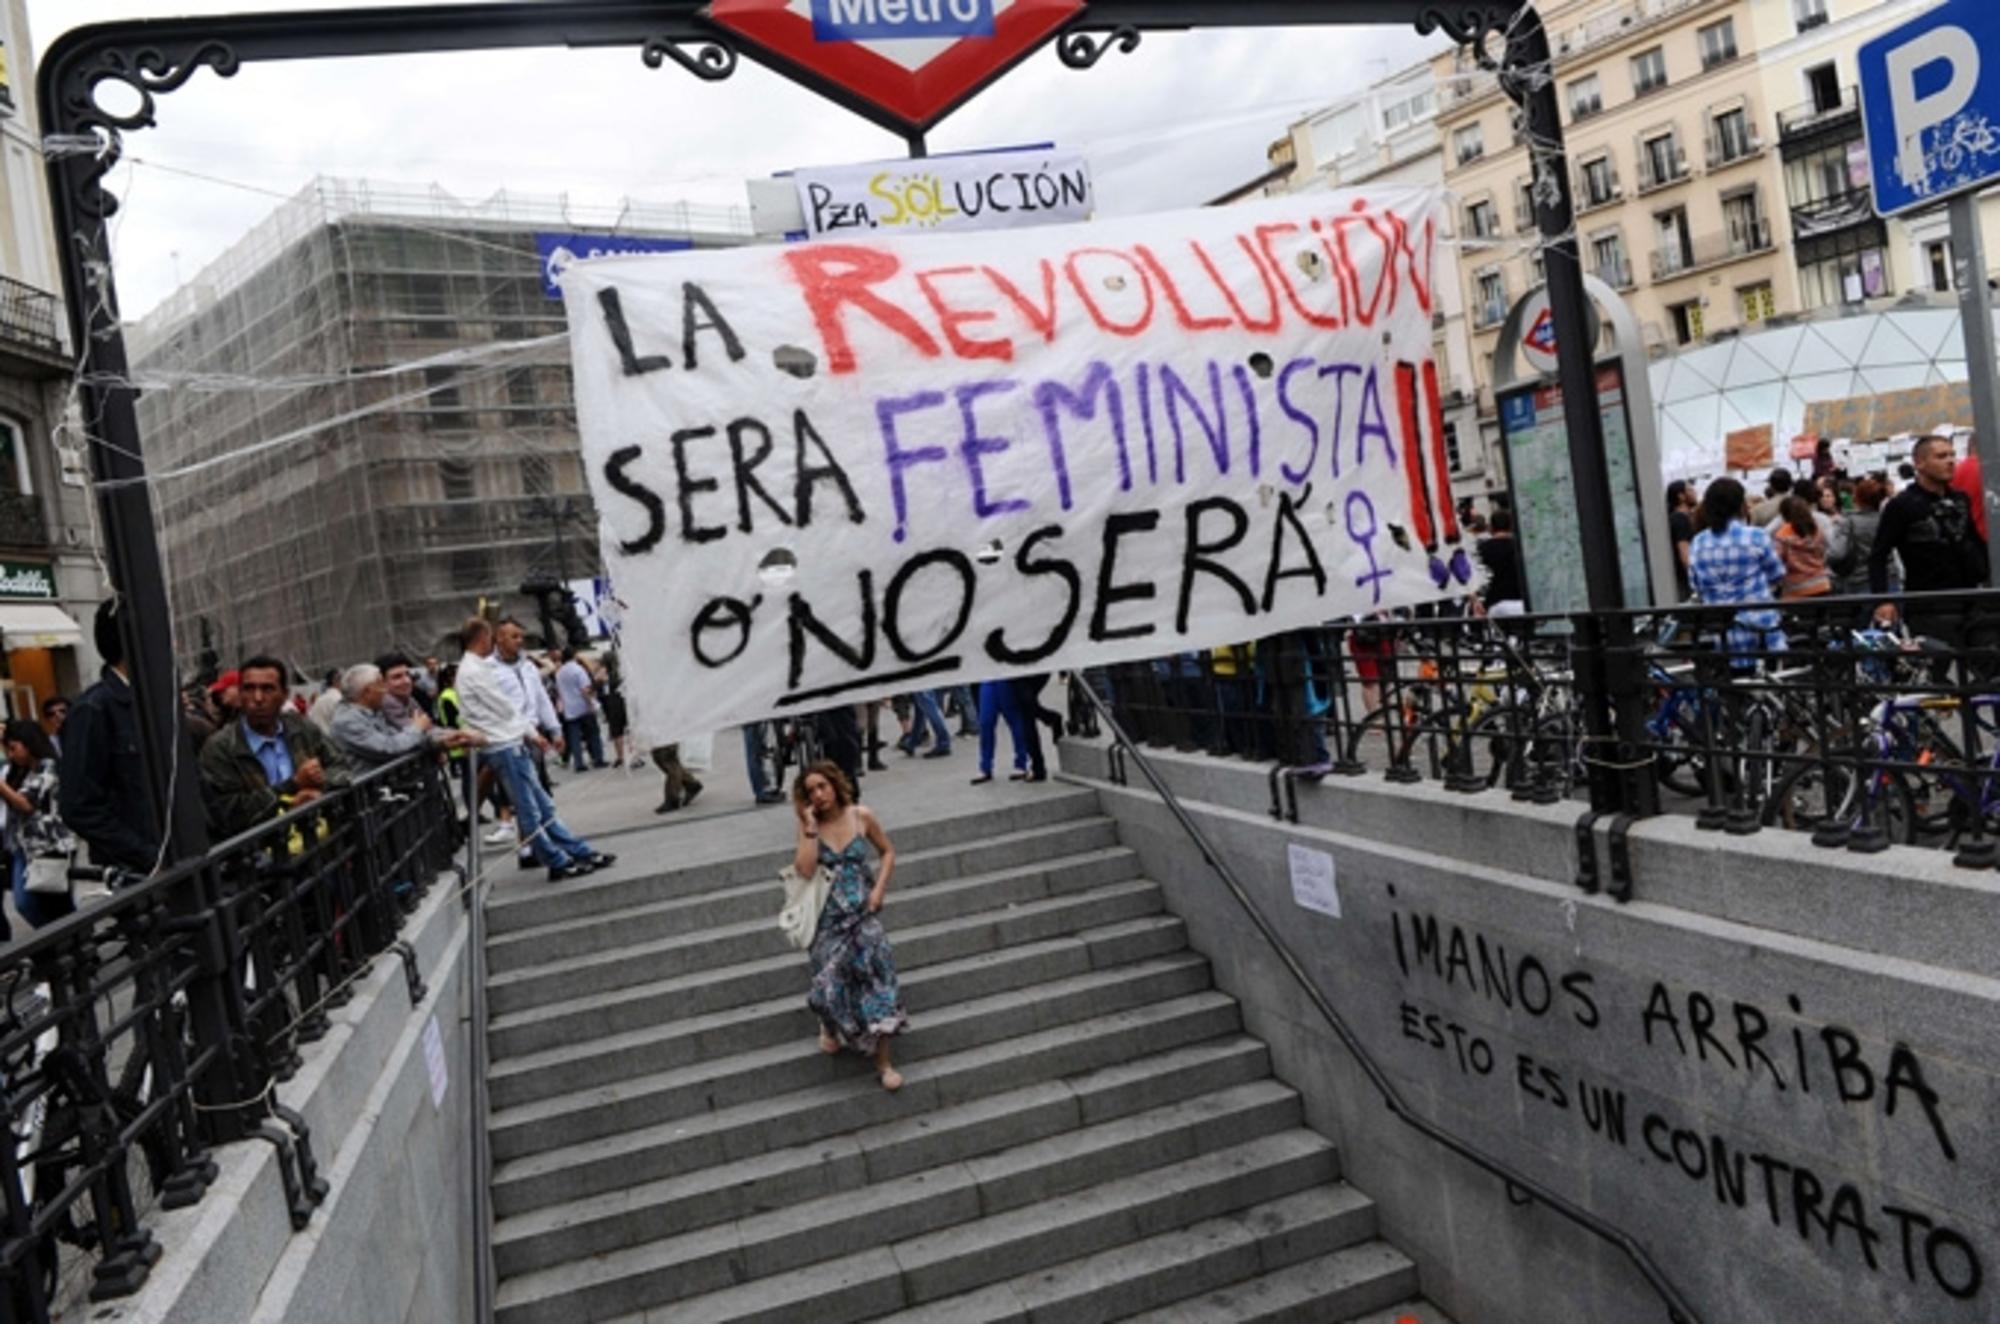 La revolución será feminista o no será. 15M en Sol